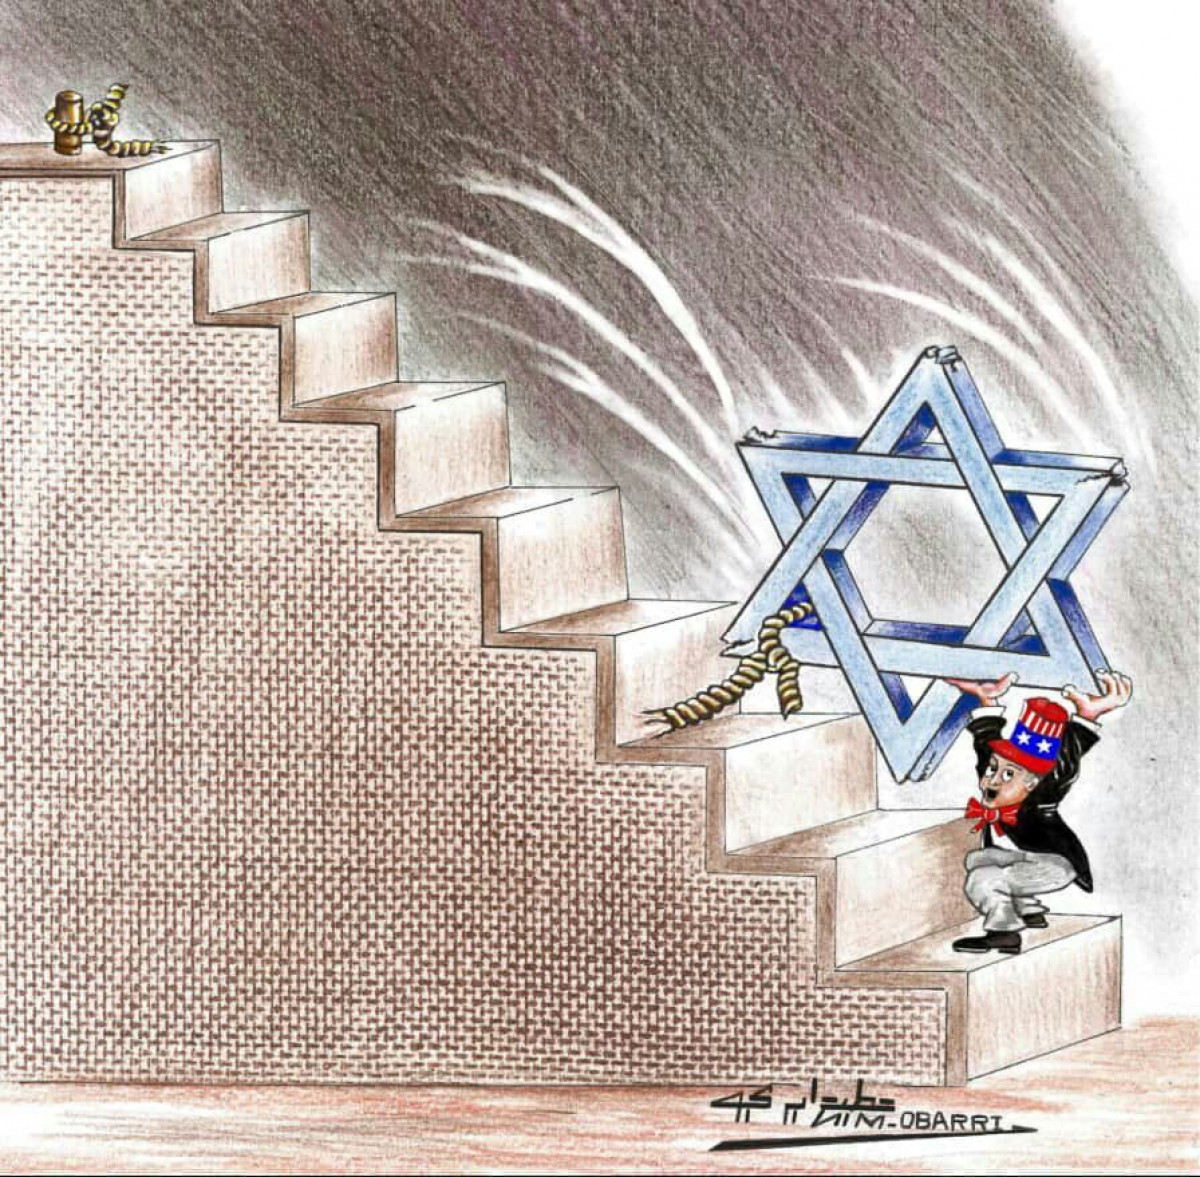 كاريكاتير / انحدار وضعف الكيان الإسرائيلي داخلياً واقتصادياً وعسكرياً